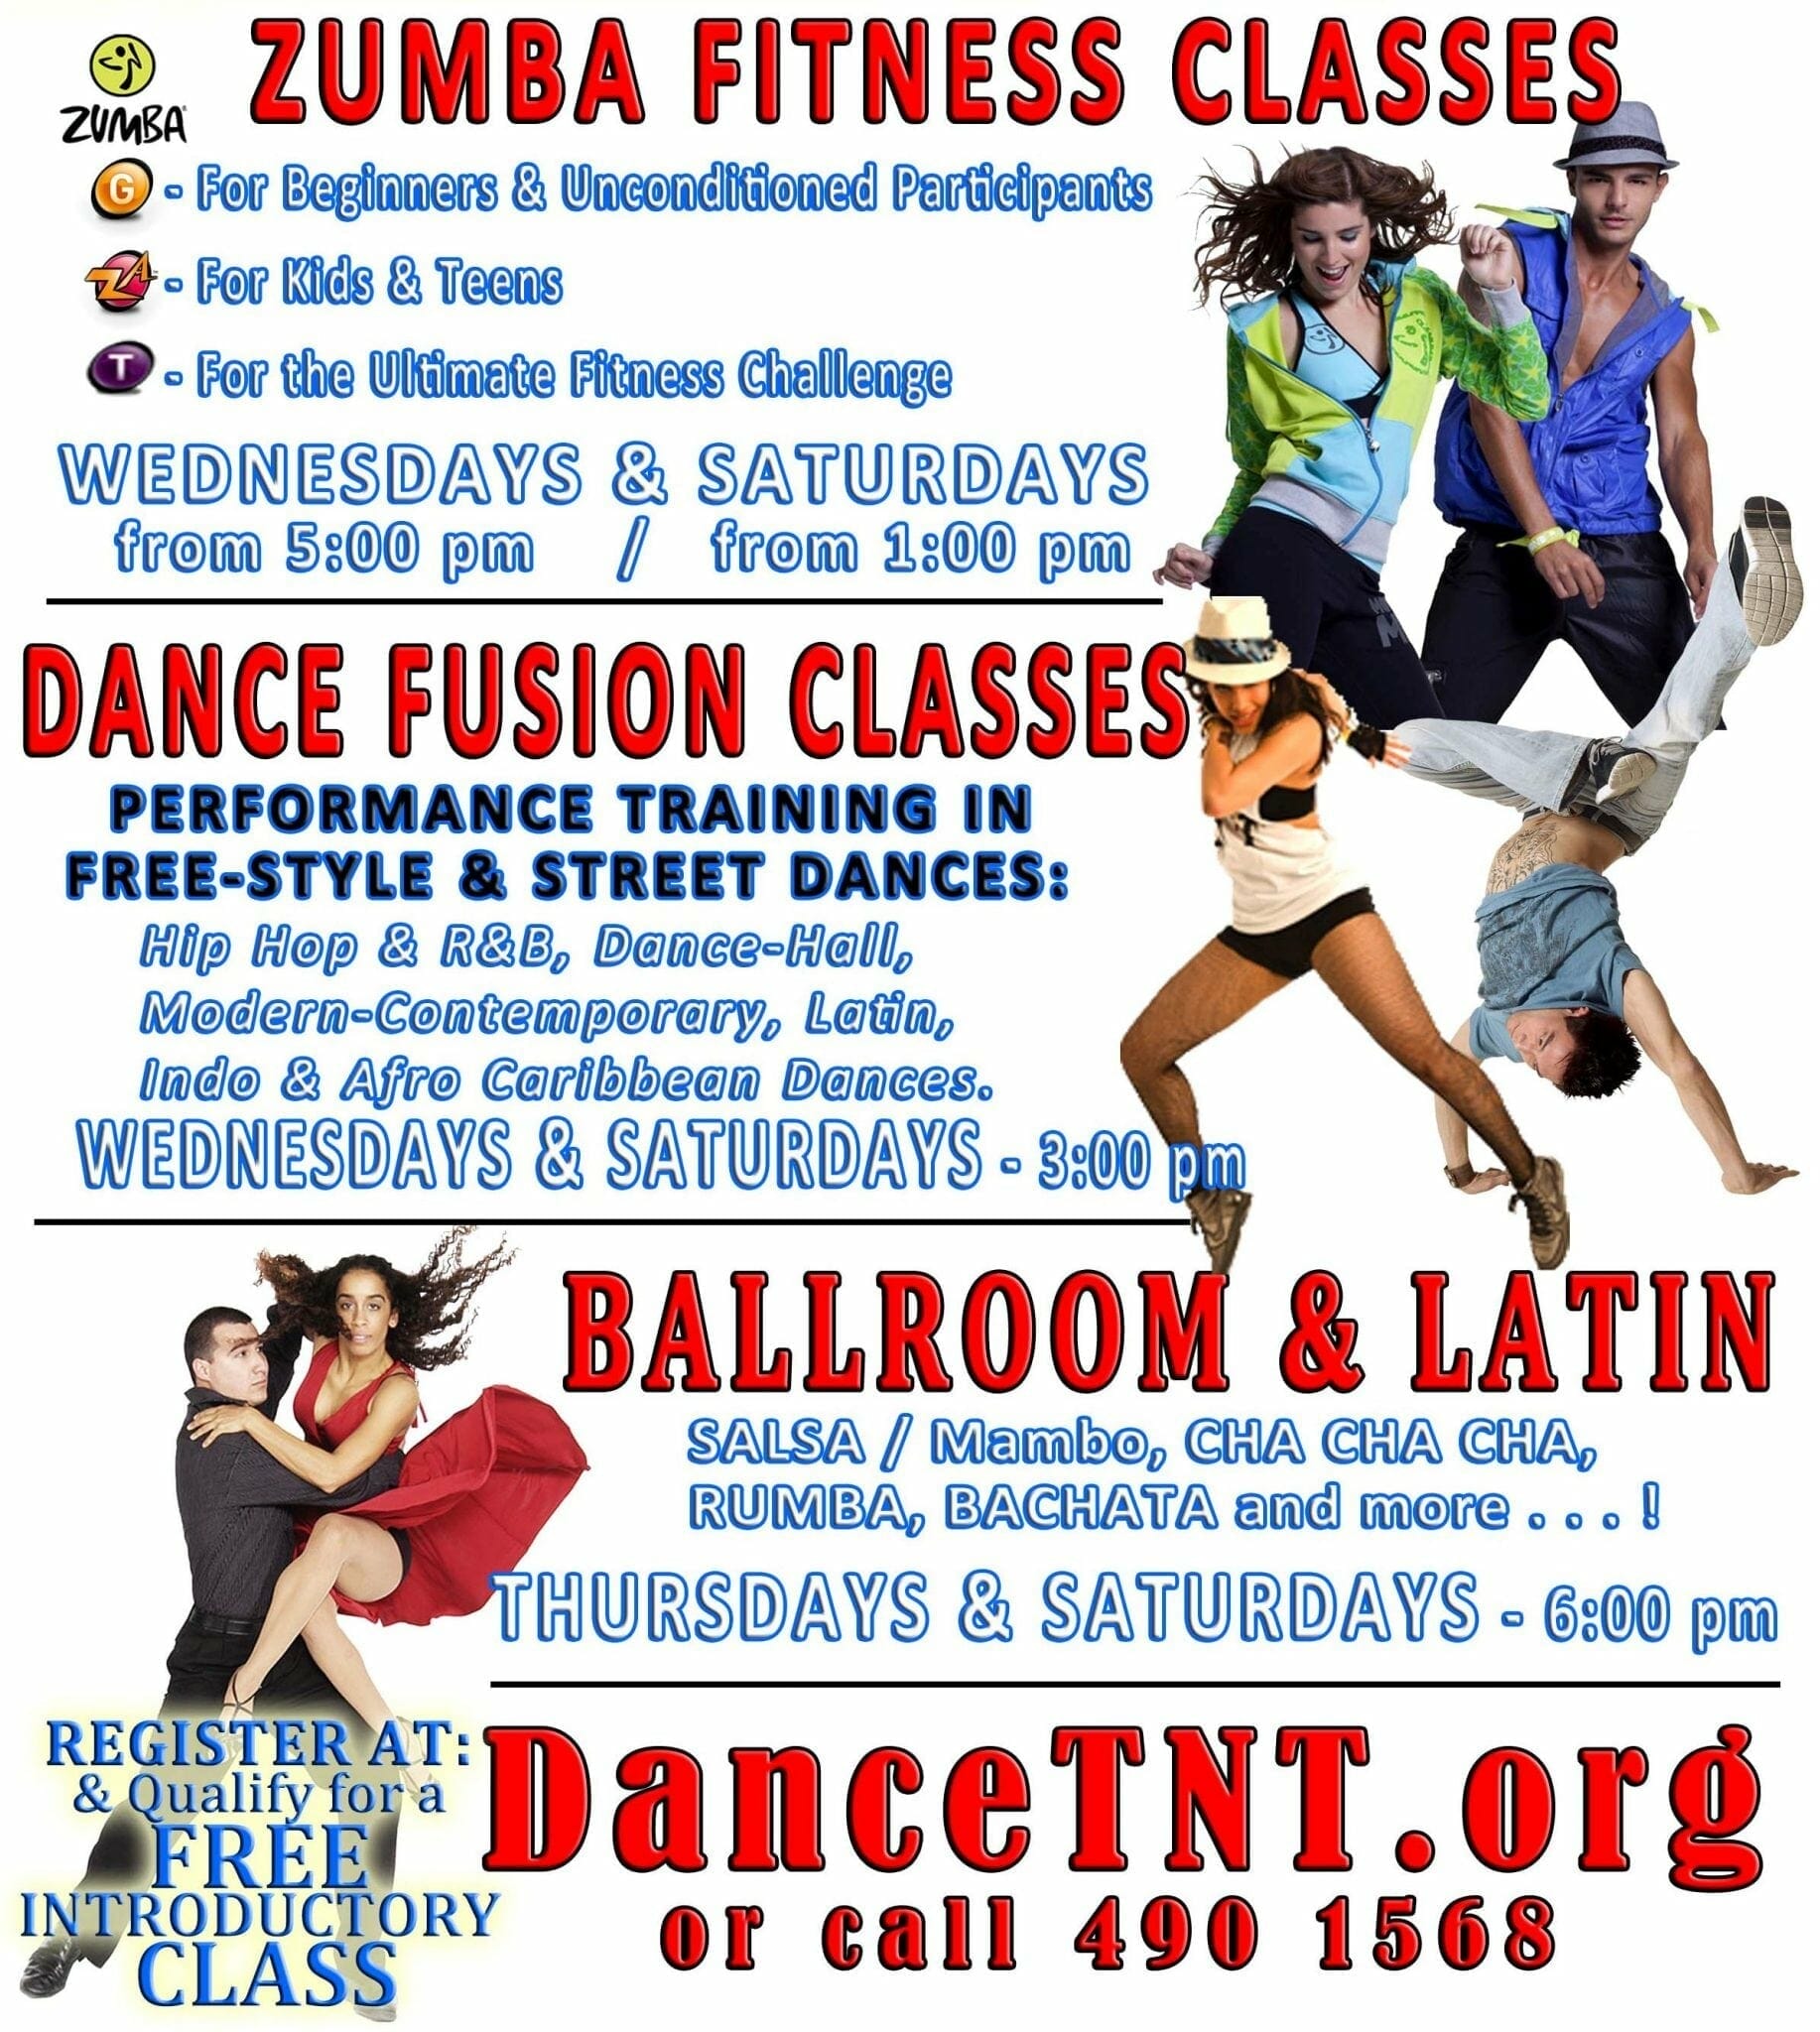 Dance-Fusion, Free-Style, Latin & Shape-Fit DancerSize Classes